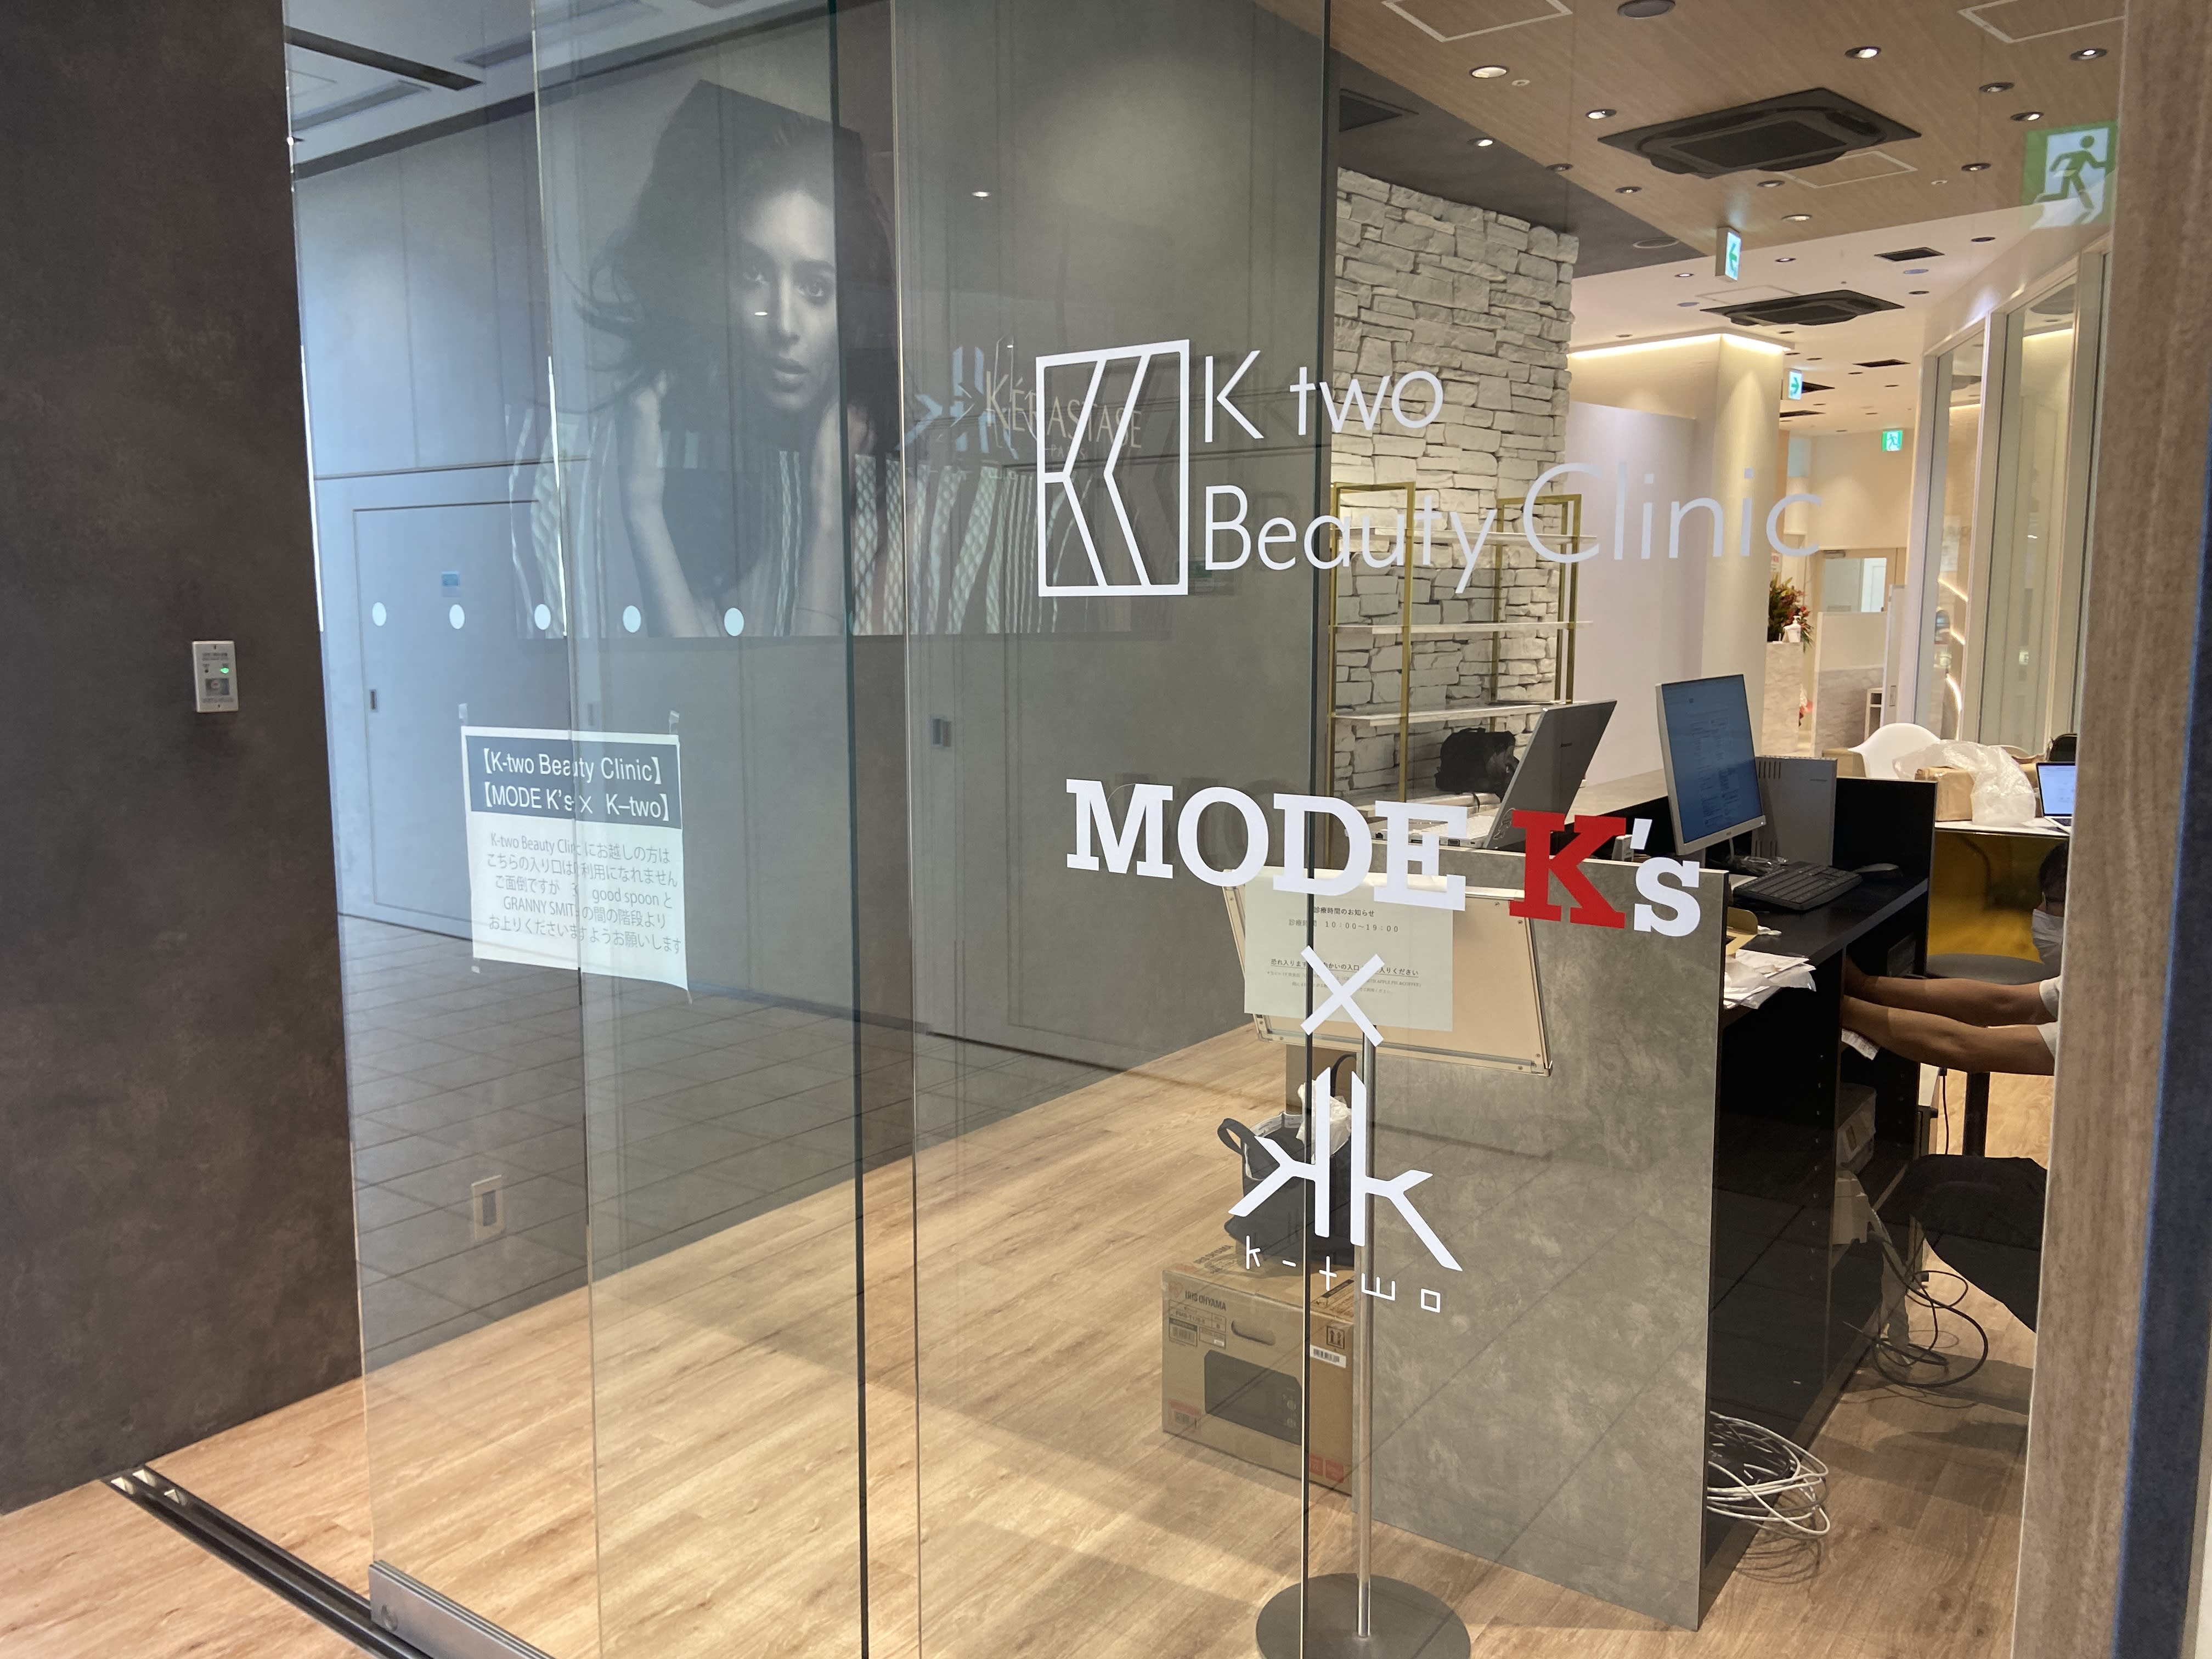 MODE K's 西宮北口× k-twoのアイキャッチ画像